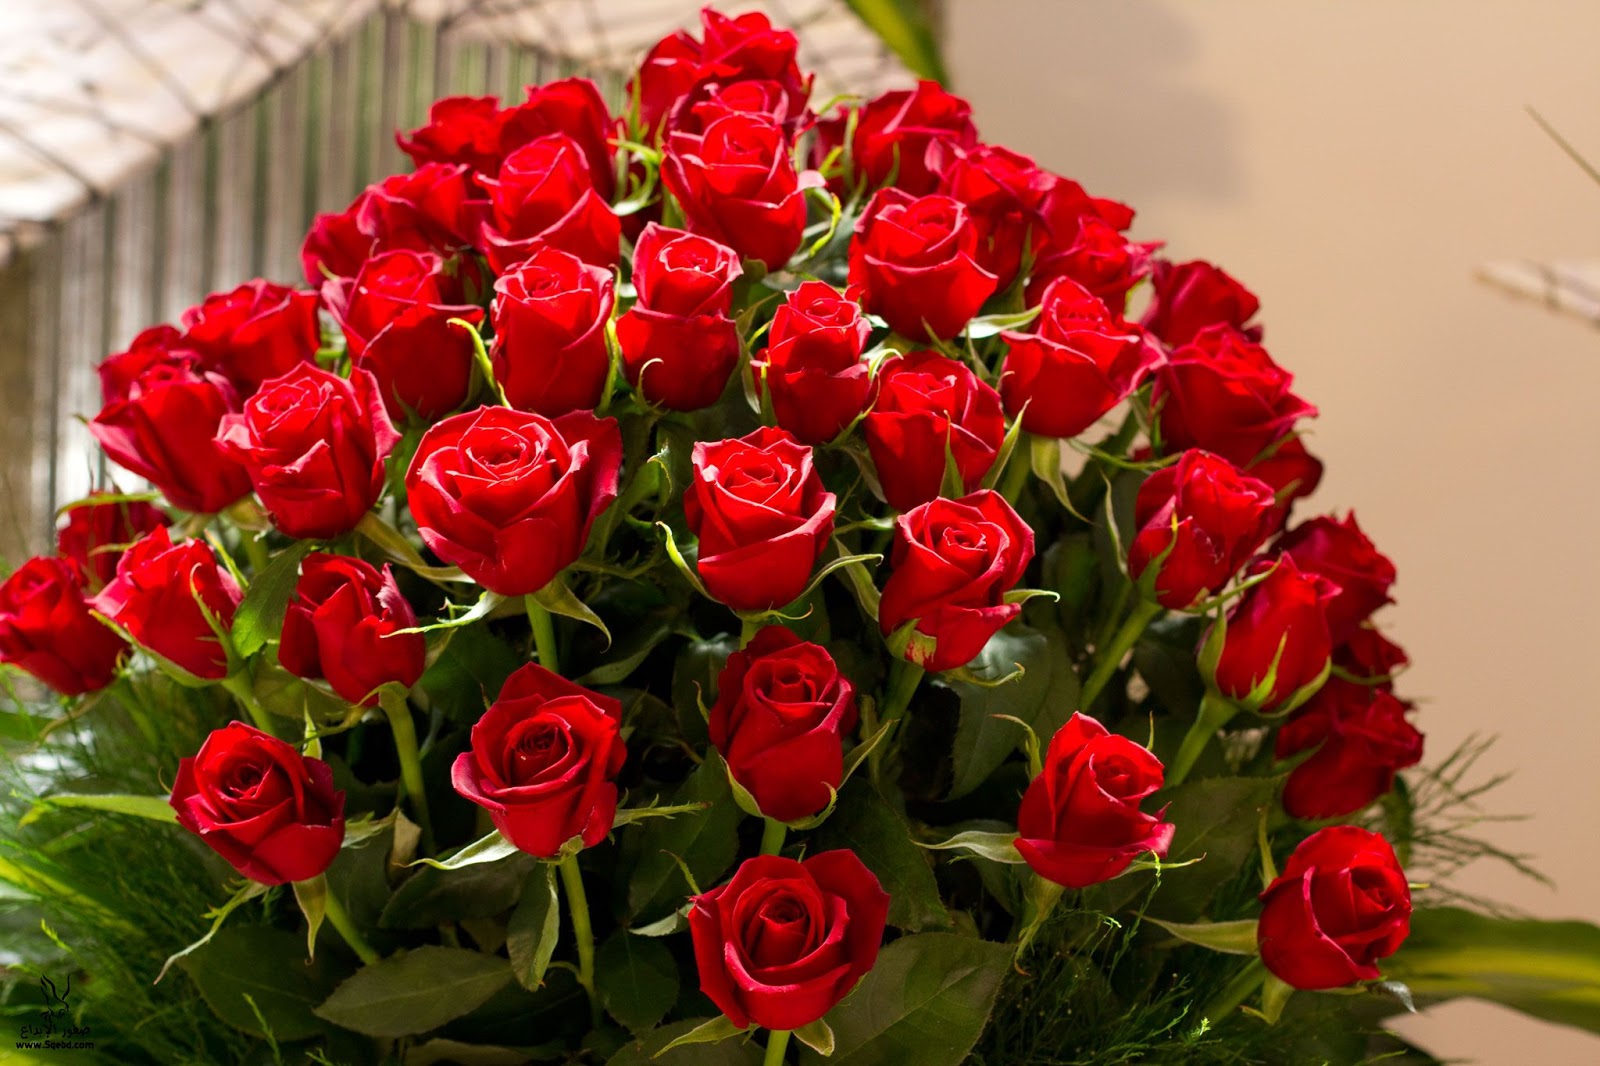 اجمل وردة حمراء في العالم رمز الحب والجمال يكمن في زهرة حمراء